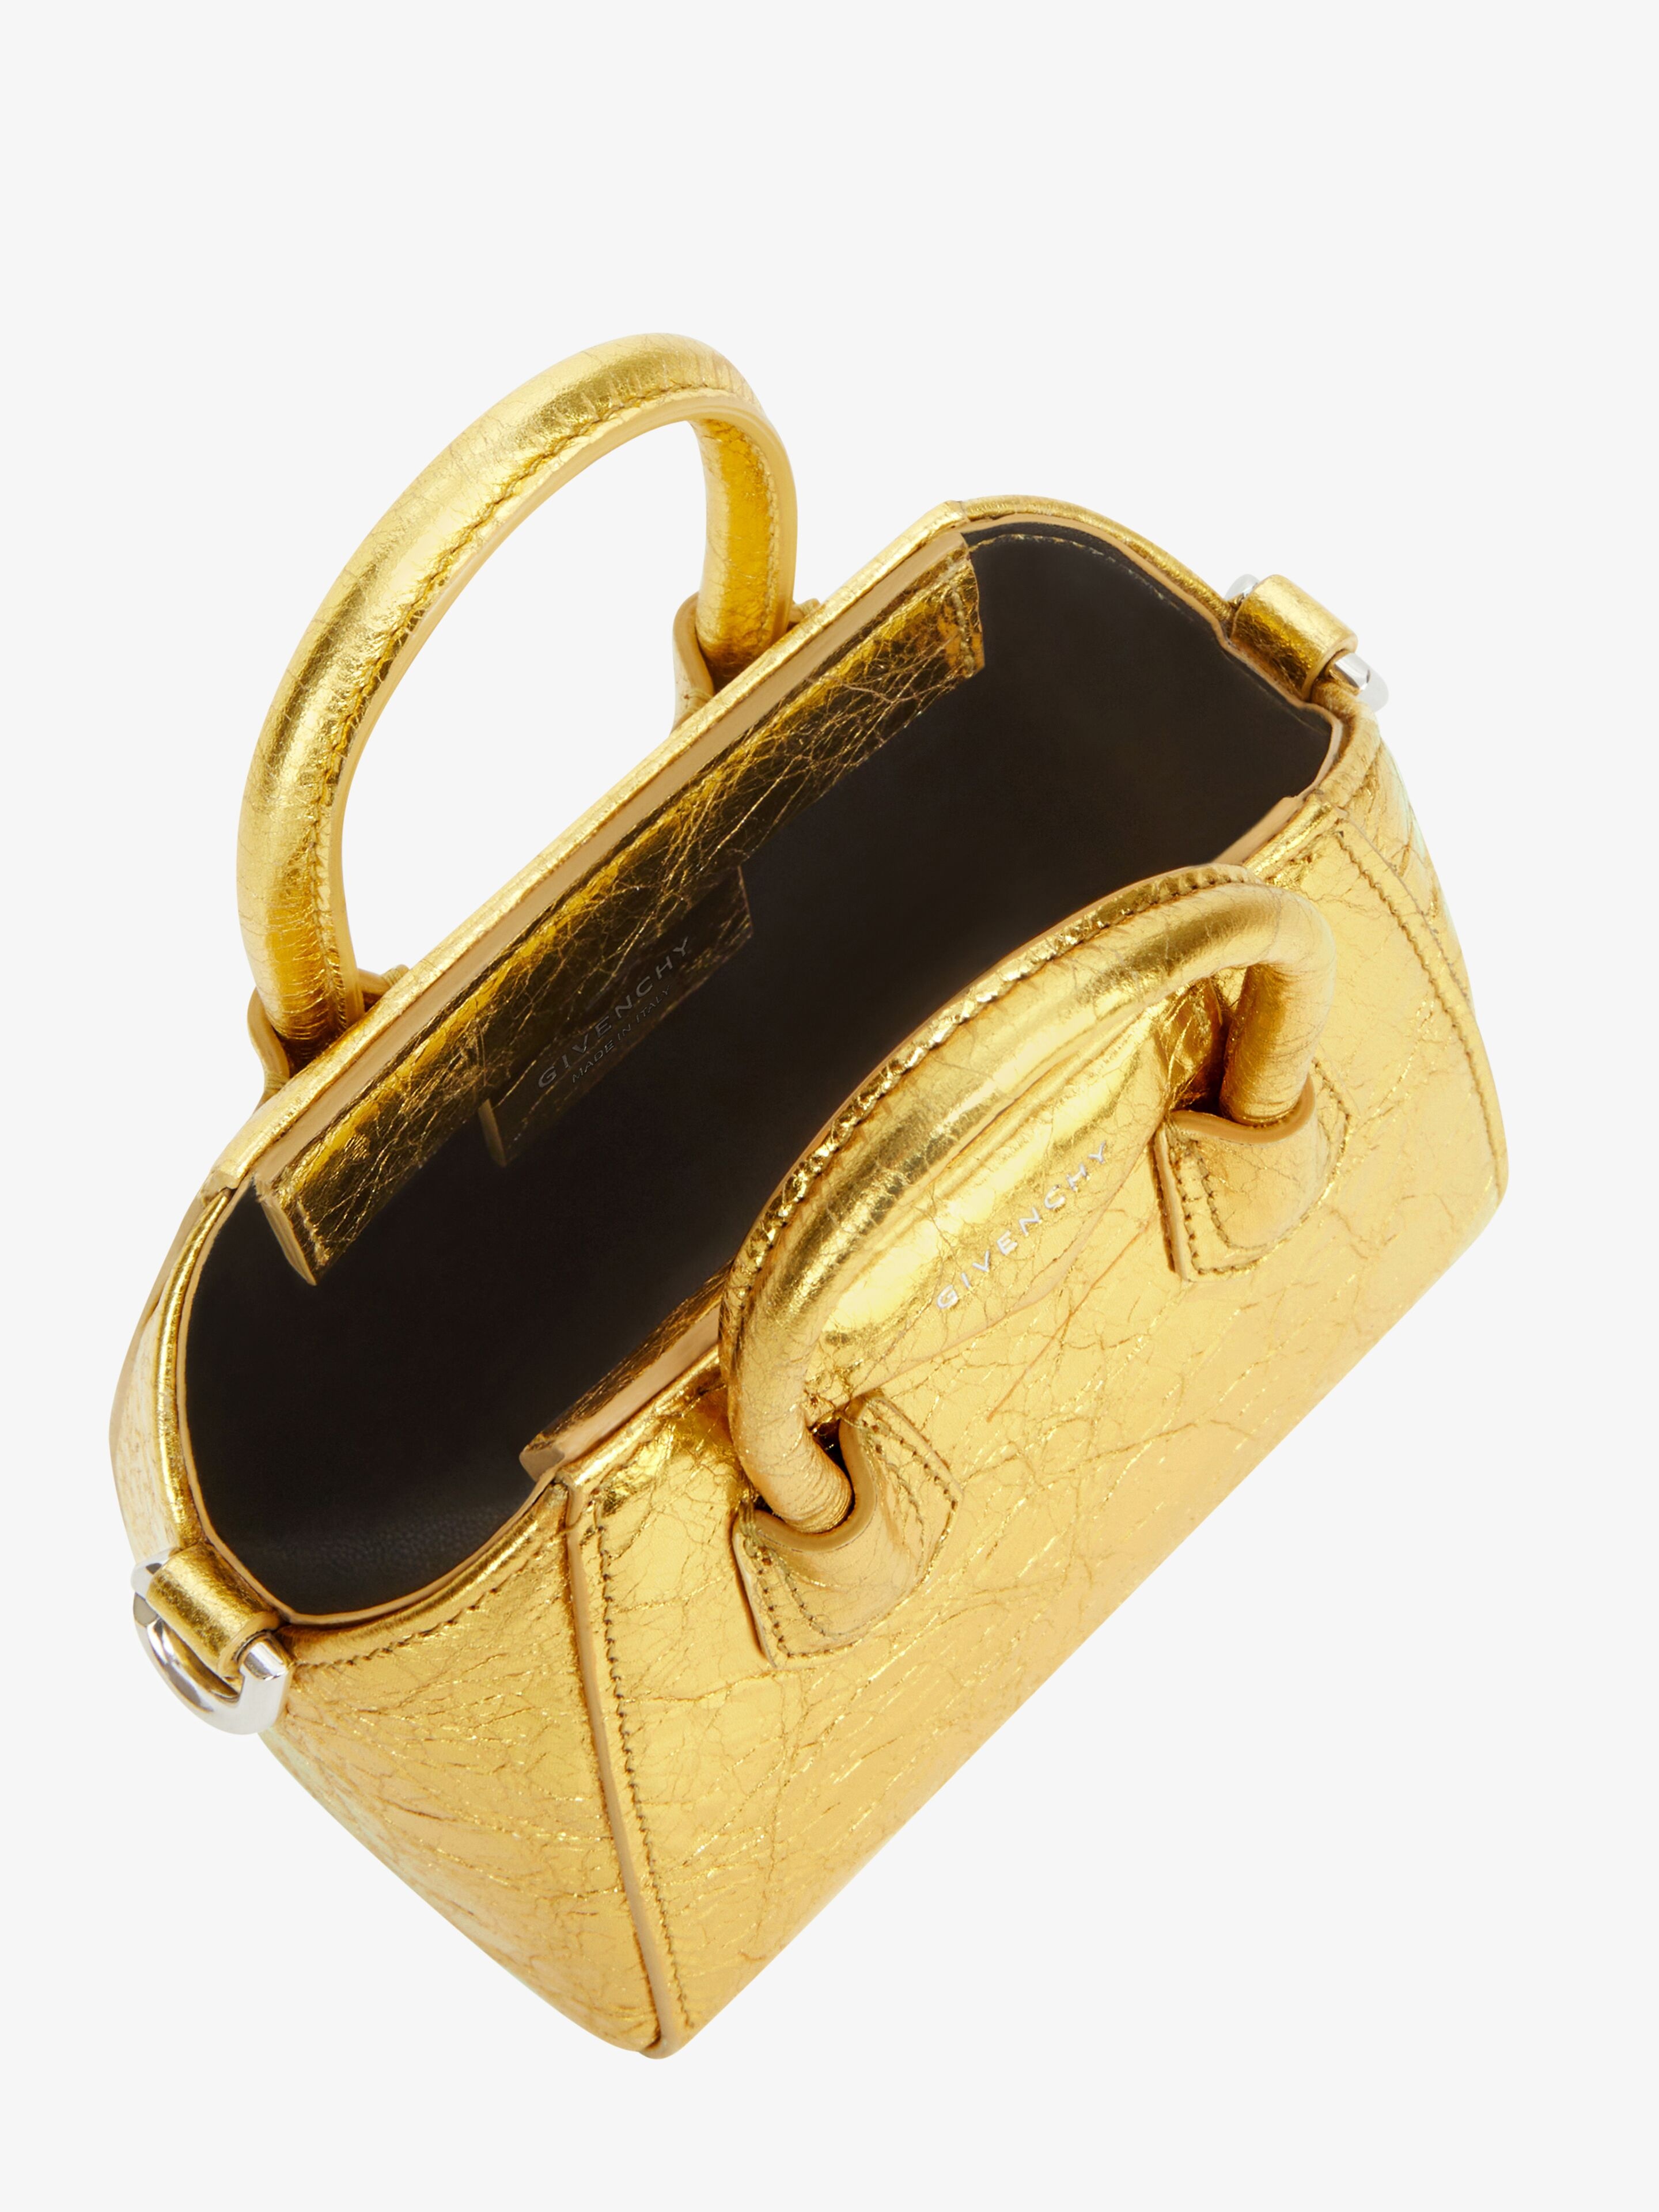 Givenchy Micro Antigona Bag